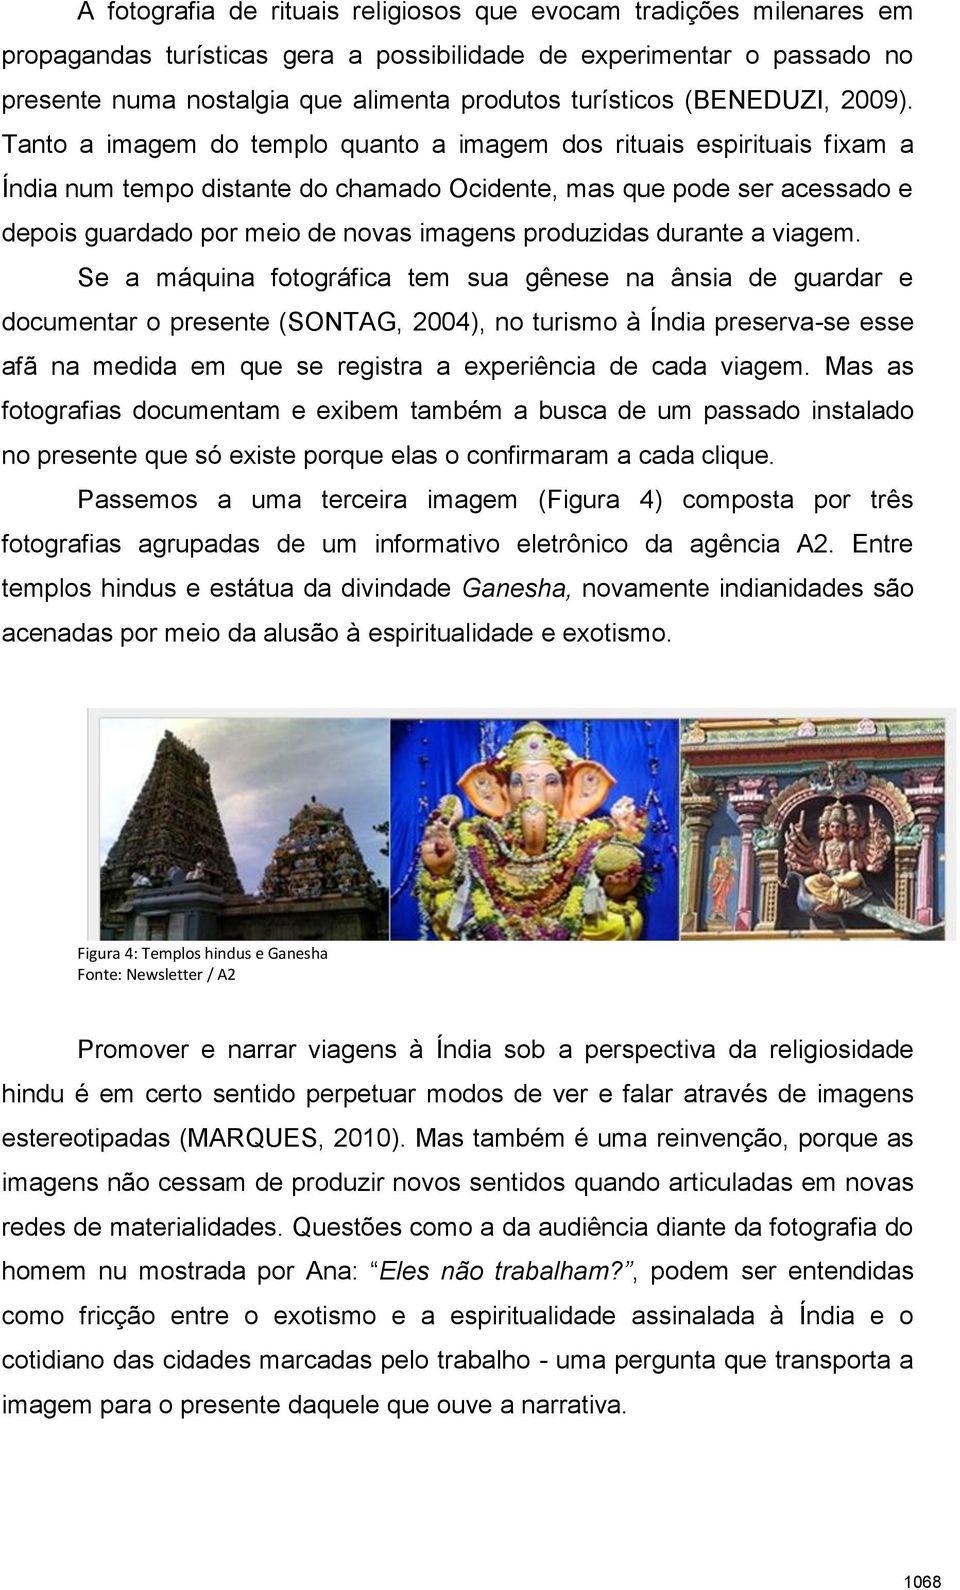 Tanto a imagem do templo quanto a imagem dos rituais espirituais fixam a Índia num tempo distante do chamado Ocidente, mas que pode ser acessado e depois guardado por meio de novas imagens produzidas